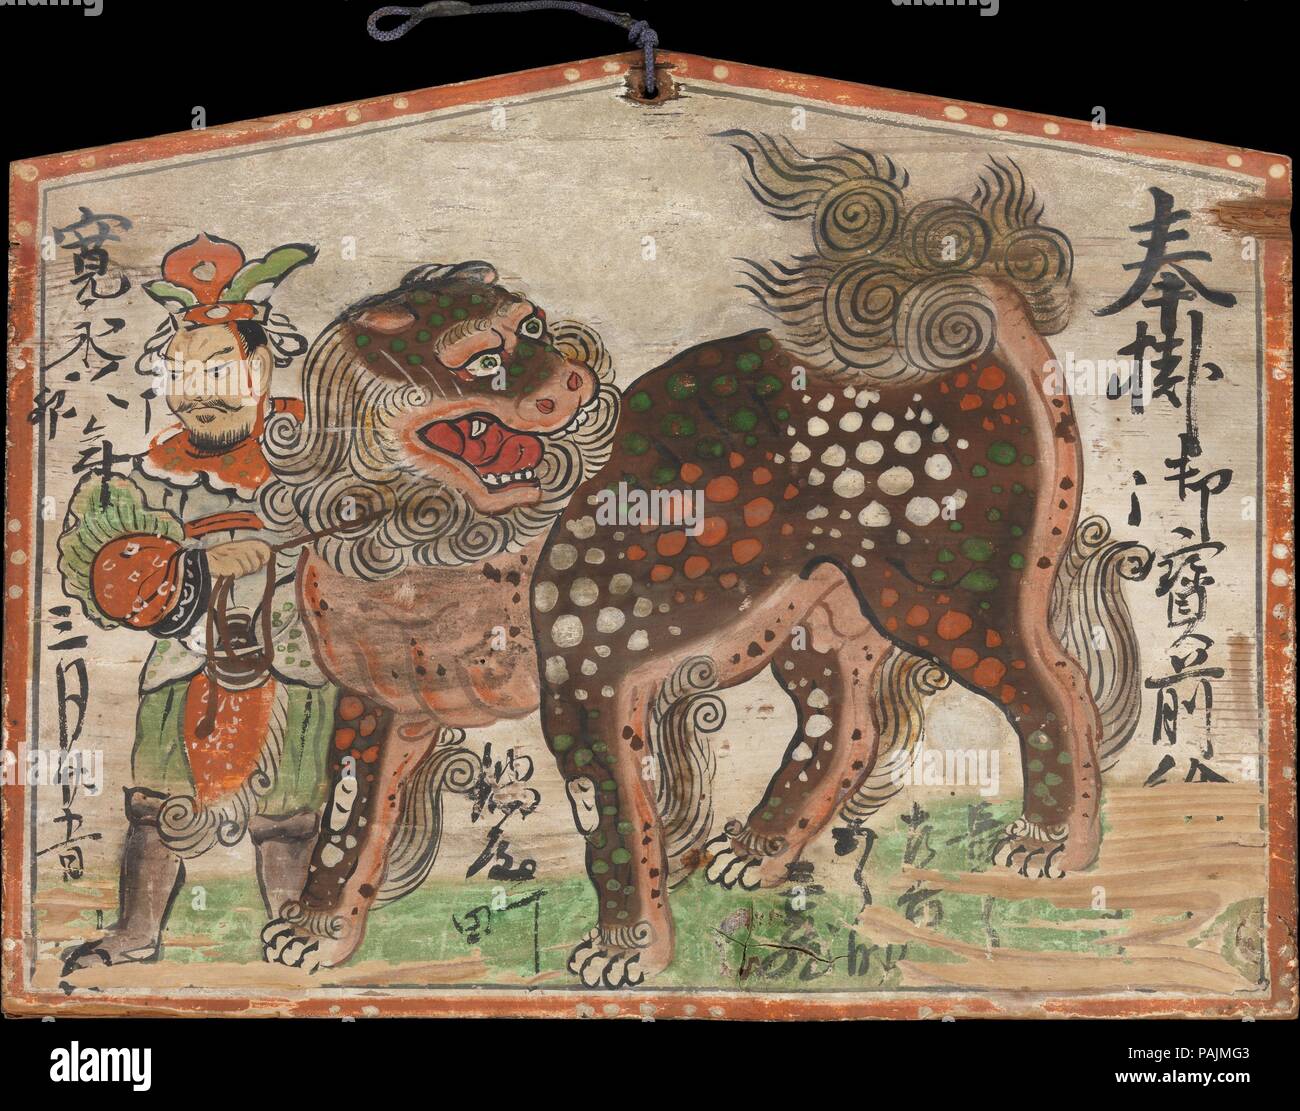 Ema (votive painting) Chinesischer Lion geführt von Uteno. Kultur: Japan. Abmessungen: 10 3/4 x 14 3/8 in. (27,3 x 36,5 cm). Datum: datiert 1627. Dieses ema zeigt die Chinesische lion Berg Der bodhisattva Monju (Sanskrit: Manjushri) und dessen Handler, die gottheit Uteno. Auf beiden Seiten des Bildes geschrieben wird ein Text, jetzt teilweise abgerieben, die einmal gelesen: Das Ema ist respektvoll auf die Gottheit auf der fünfundzwanzigsten Tag des dritten Monats des Jahres 1627 vorgestellt. Unter zurück die Beine des Lion gequetscht sind die (teilweise unleserlich) Namen der vier Geber. Die beiden Namen, die in ihrer Gesamtheit gelesen werden können, sind Gor Stockfoto